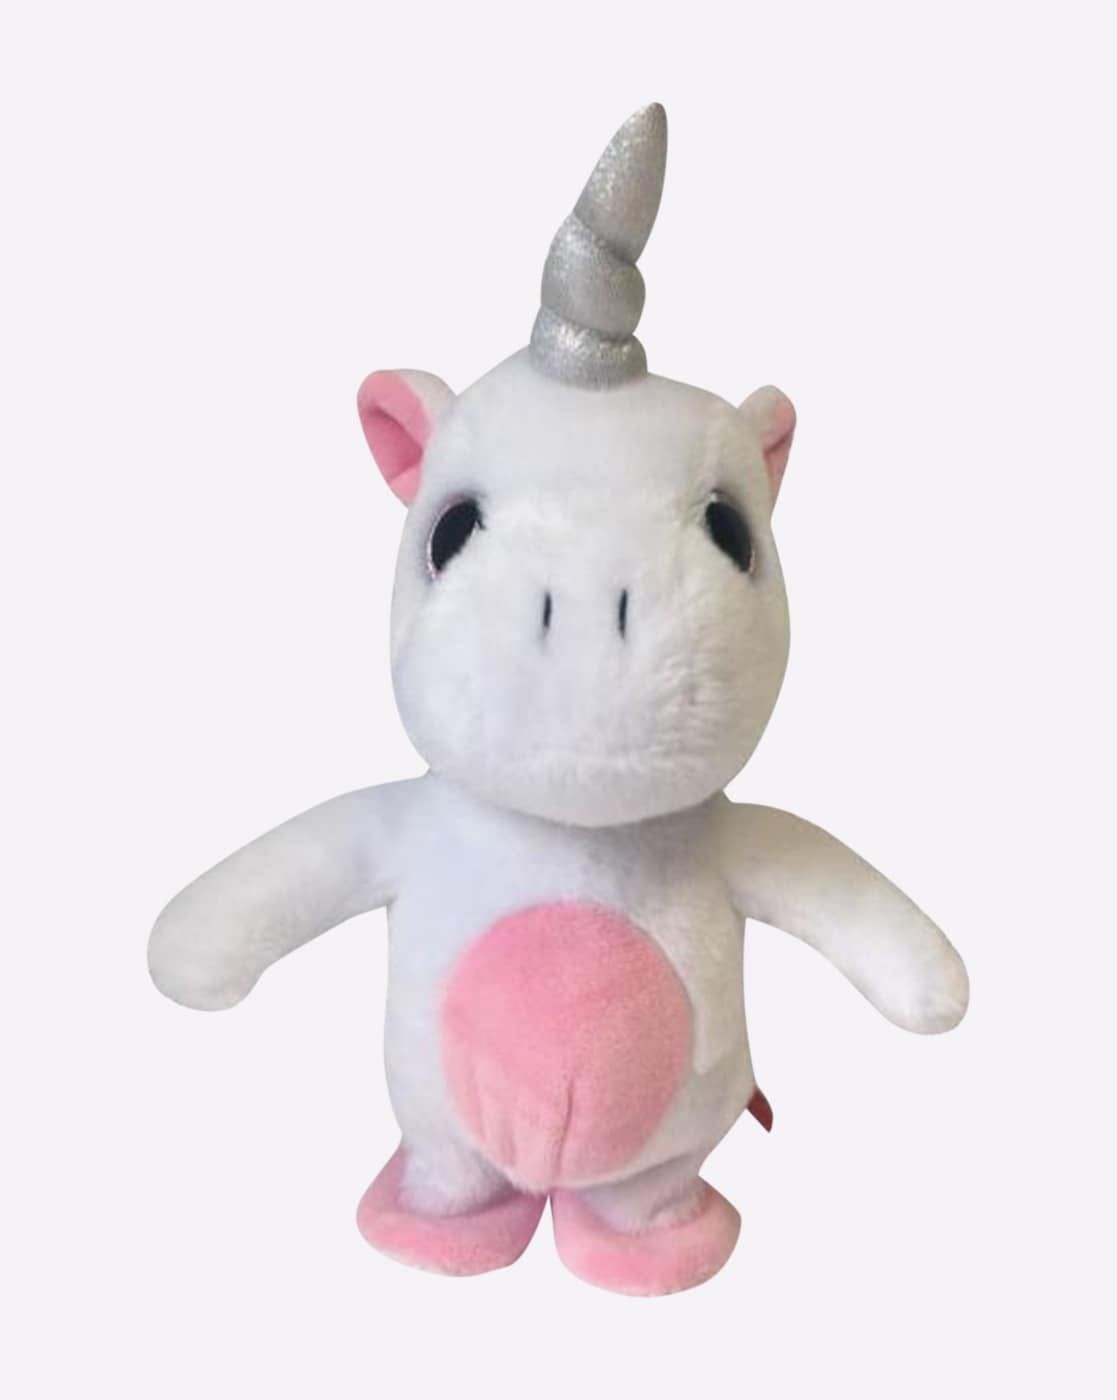 unicorn stuffed toy hamleys